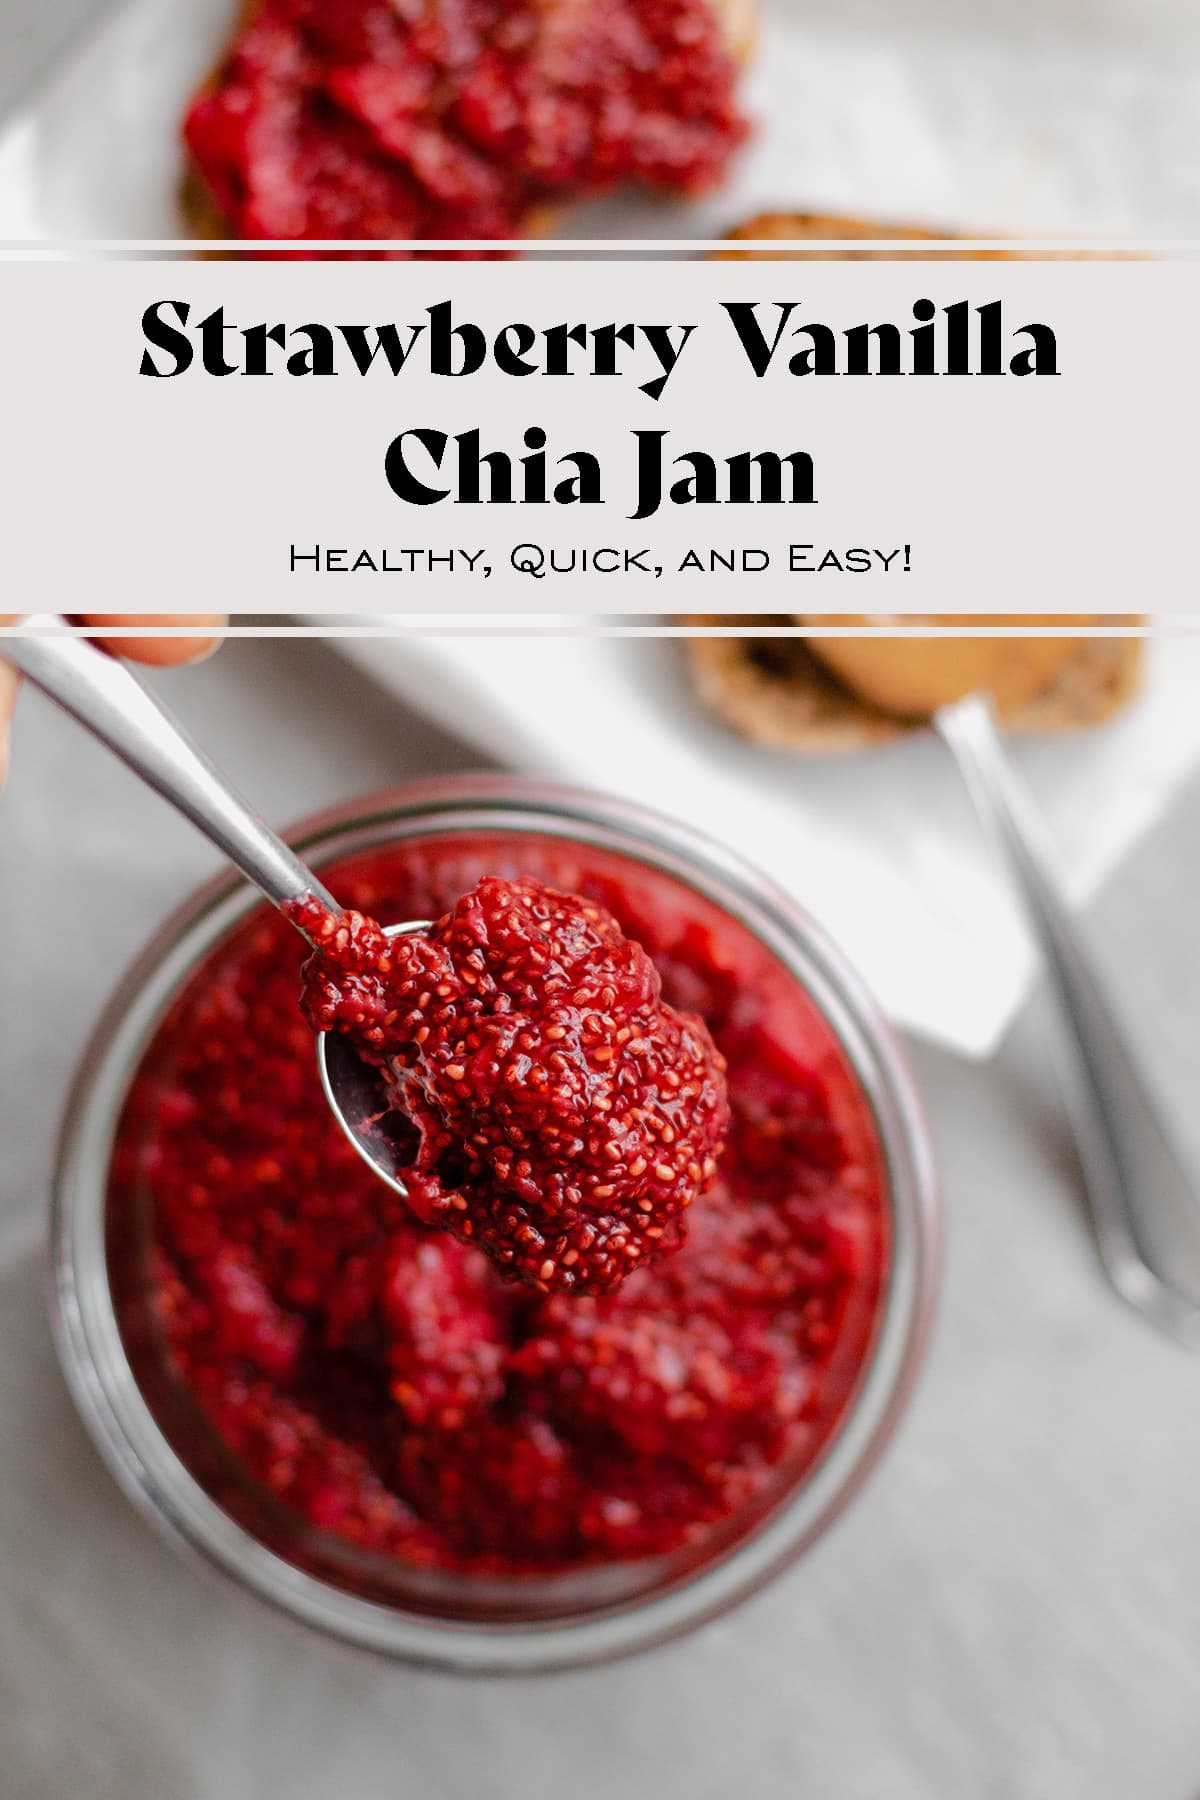 Strawberry Vanilla Chia Jam